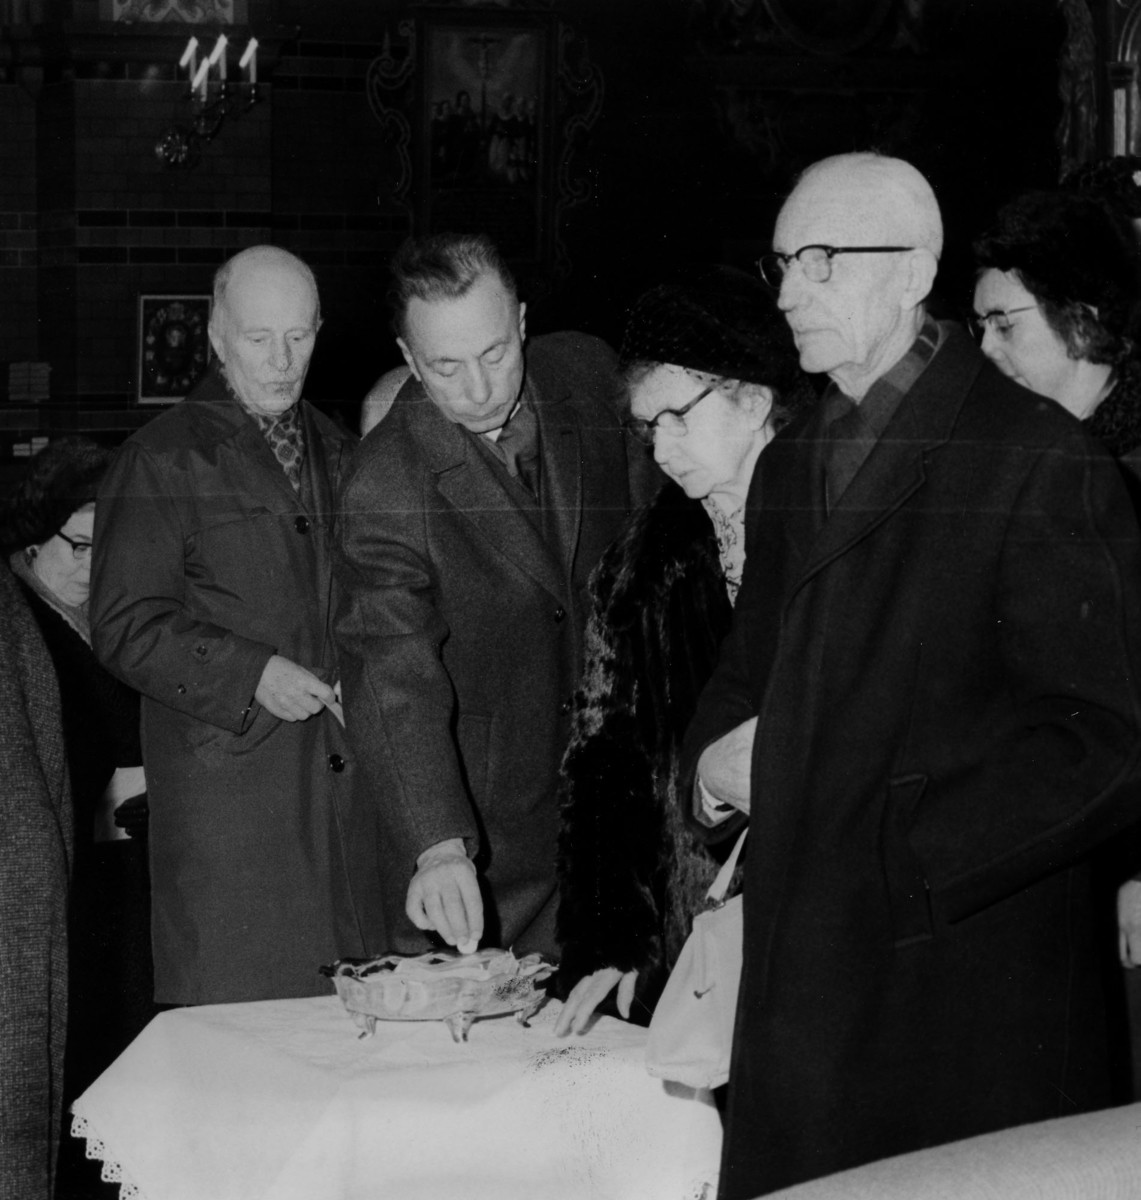 Kollekterna i kyrkan 2/1-8/1-1966, 2:a från vänster John Wilson. Längst till höger Arne Rydlöv.